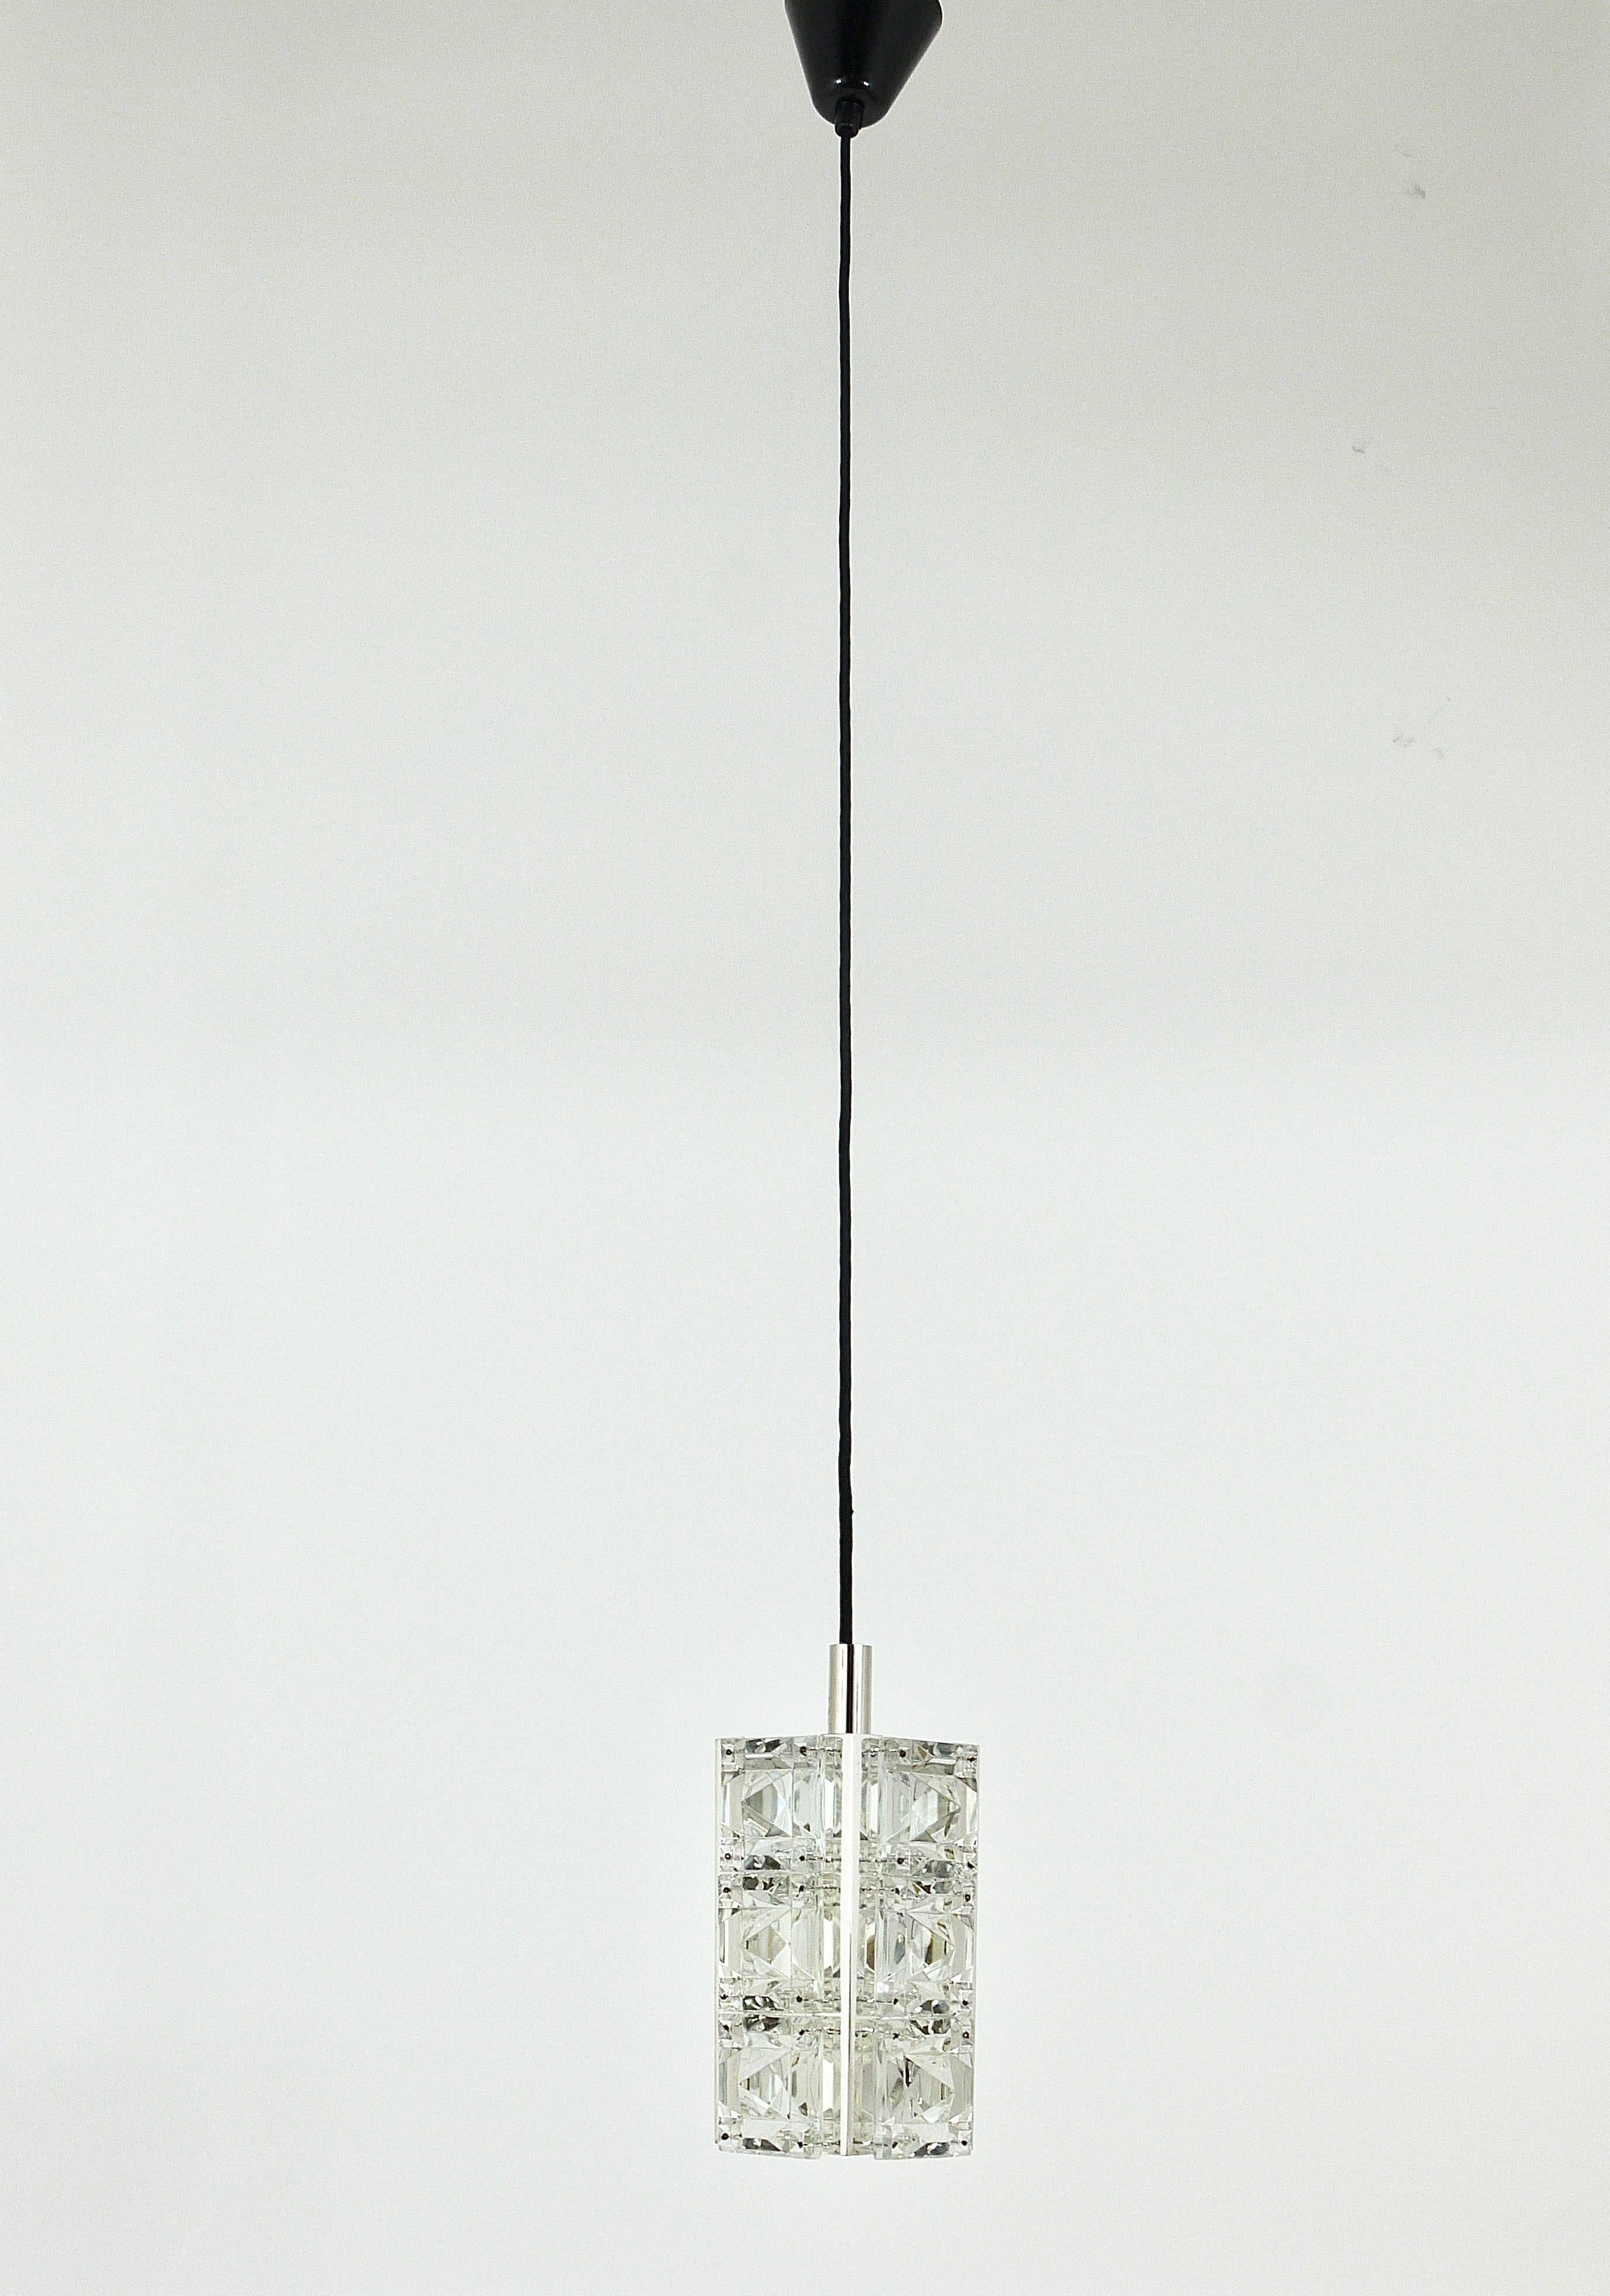 Bis zu drei schöne quadratische Pendelleuchten aus den 1960er Jahren, ausgeführt von Bakalowits in Österreich. Quadratische Glaskristalle mit dreieckiger Facette, montiert auf einem vernickelten Beschlag, jede Leuchte hat eine Lichtquelle. Neu